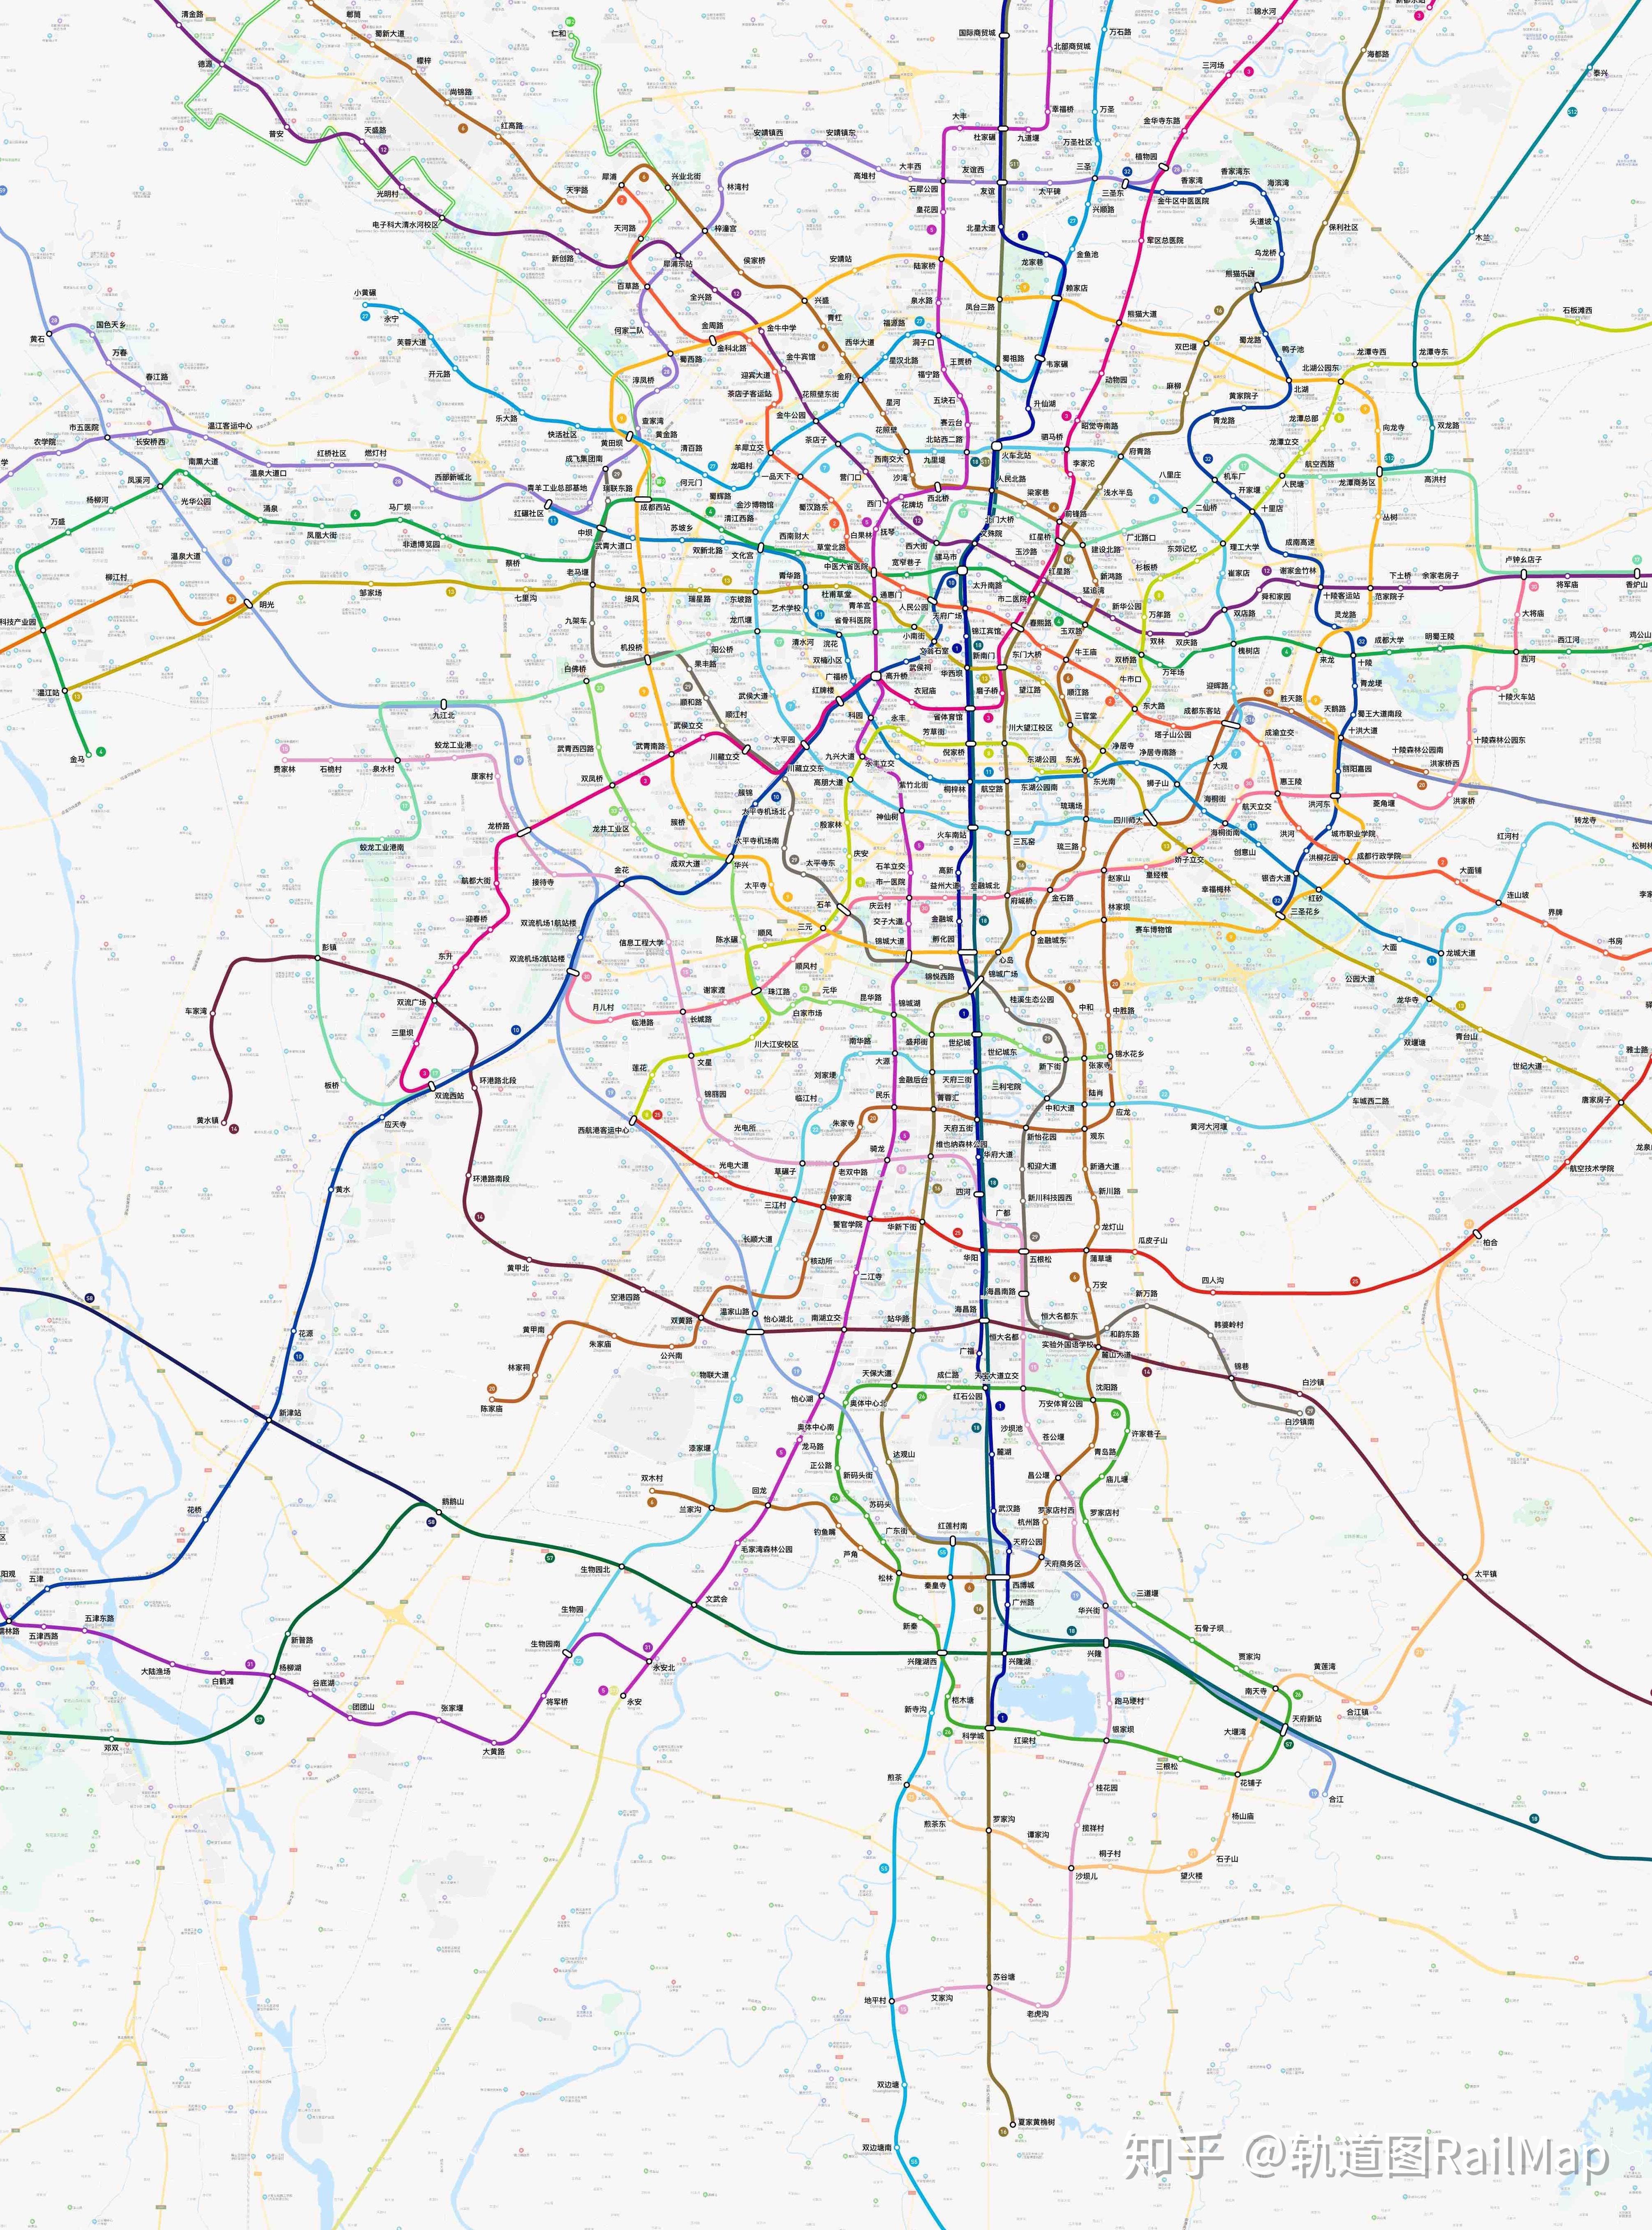 成都市轨道交通远期规划了地铁1～33号线和简阳